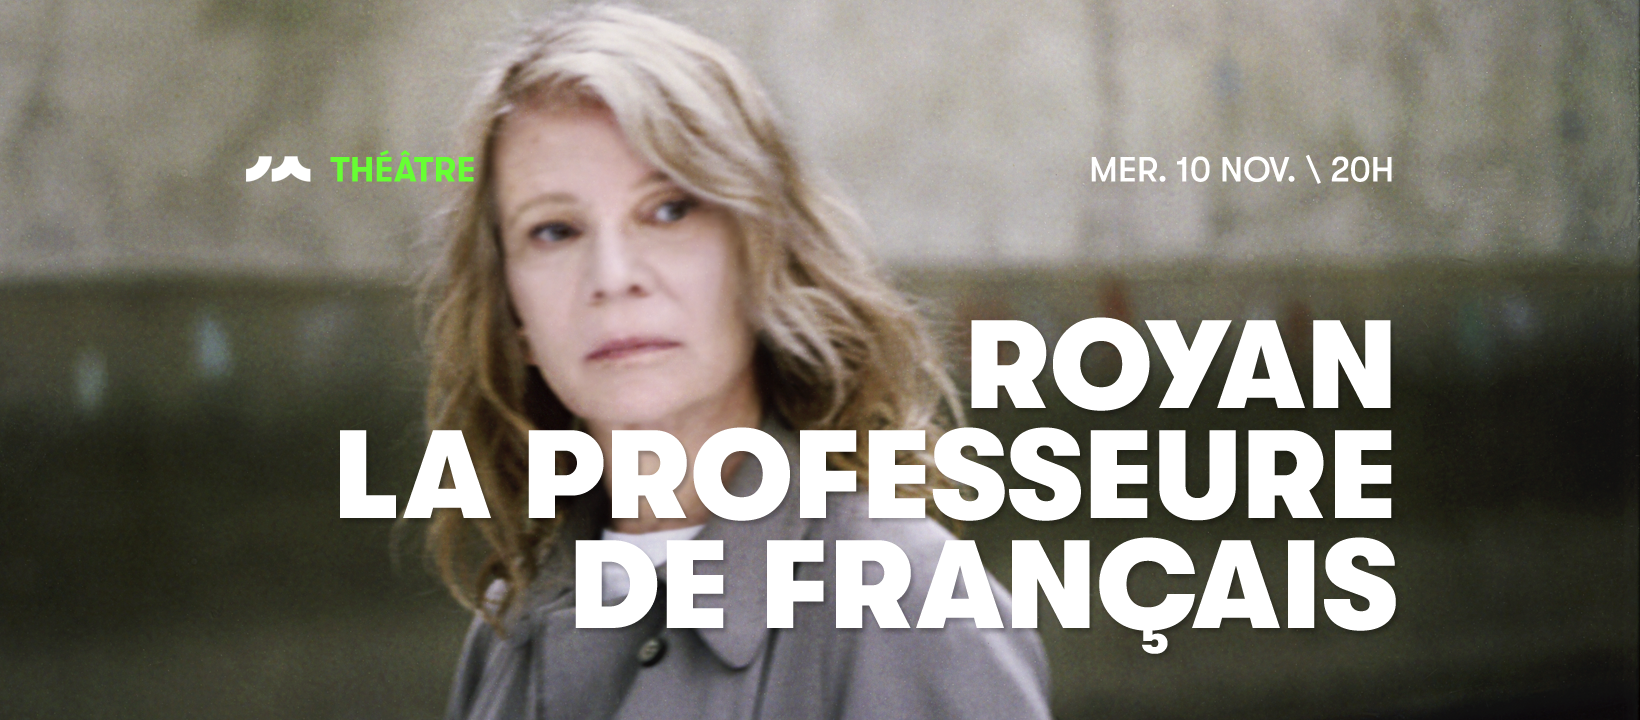 Royan, la professeure de français